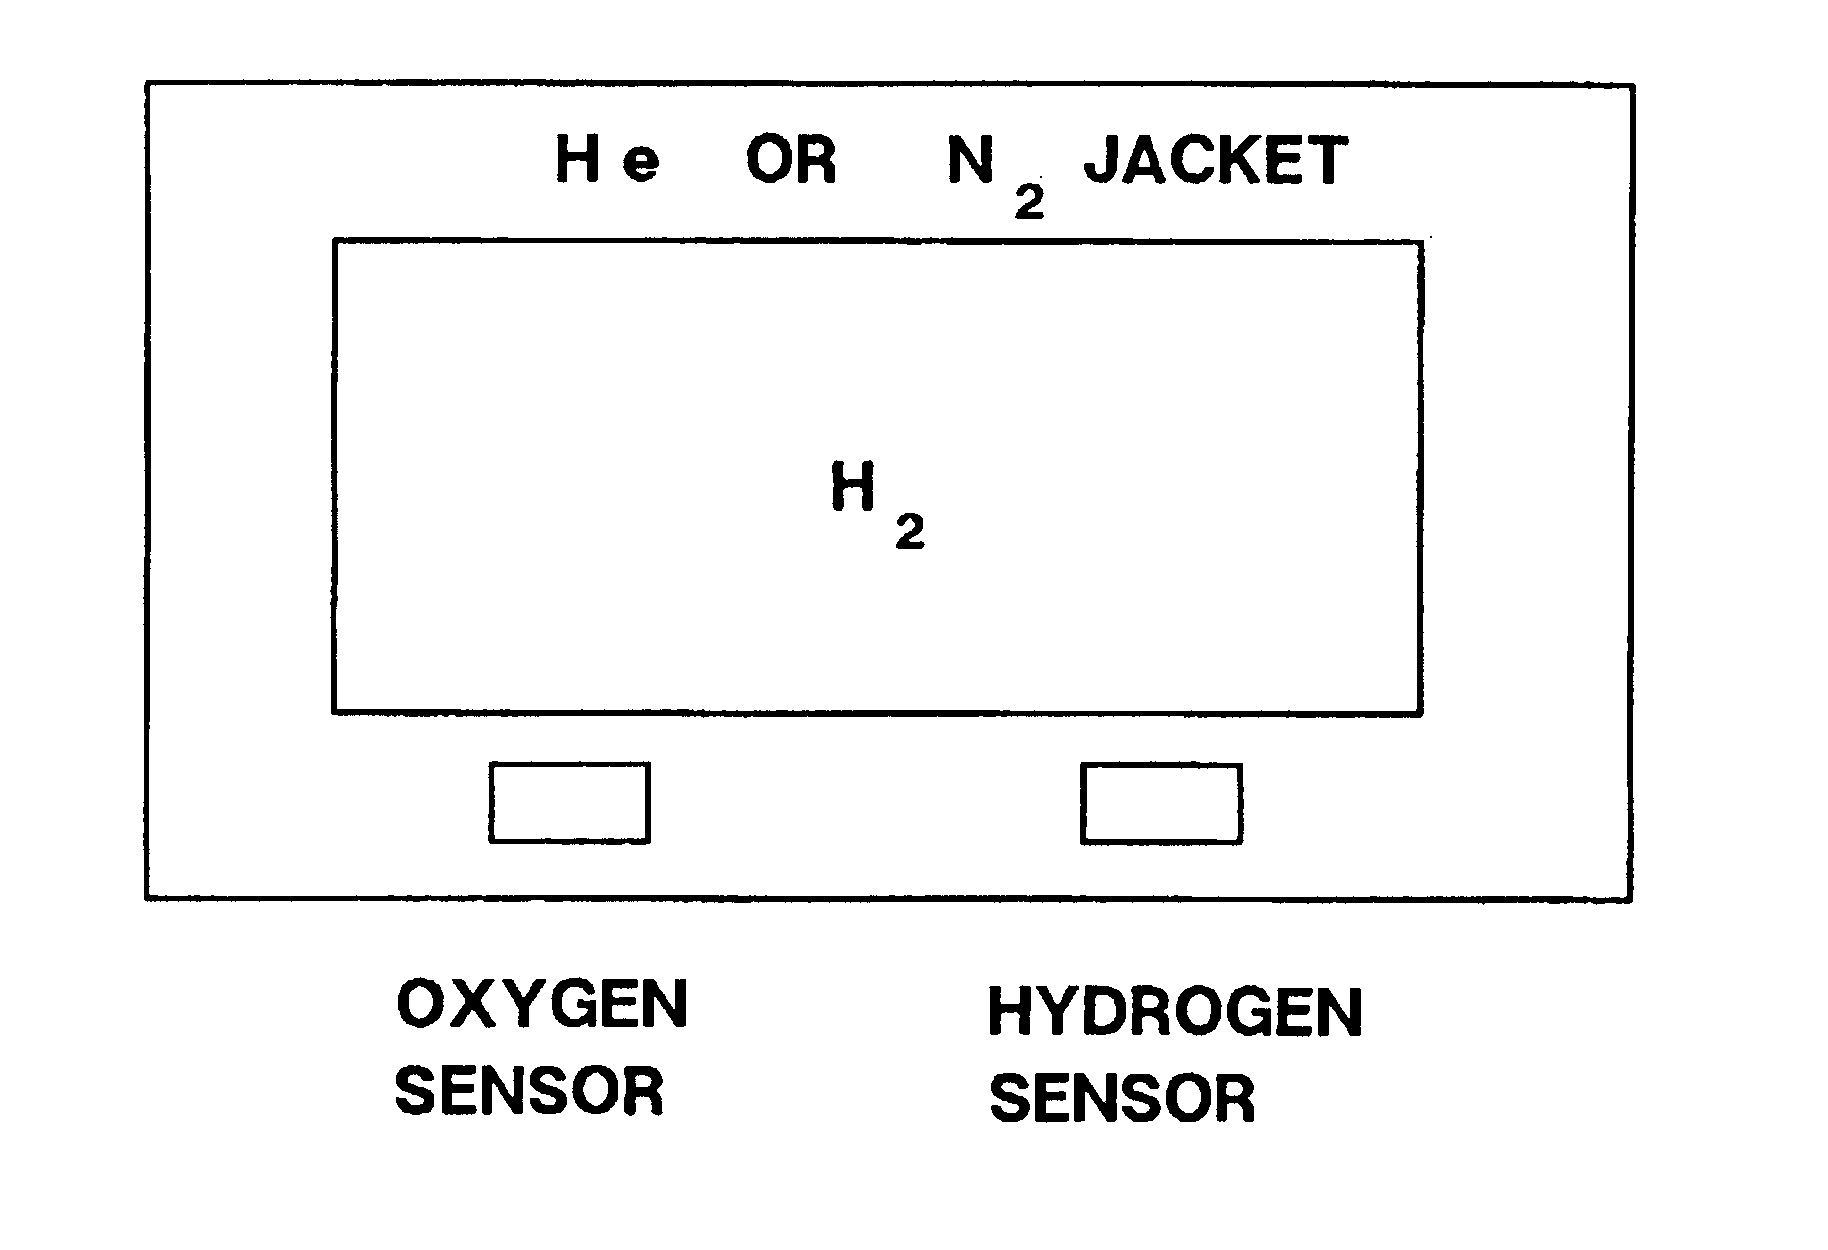 Hydrogen lighter-than-air ship